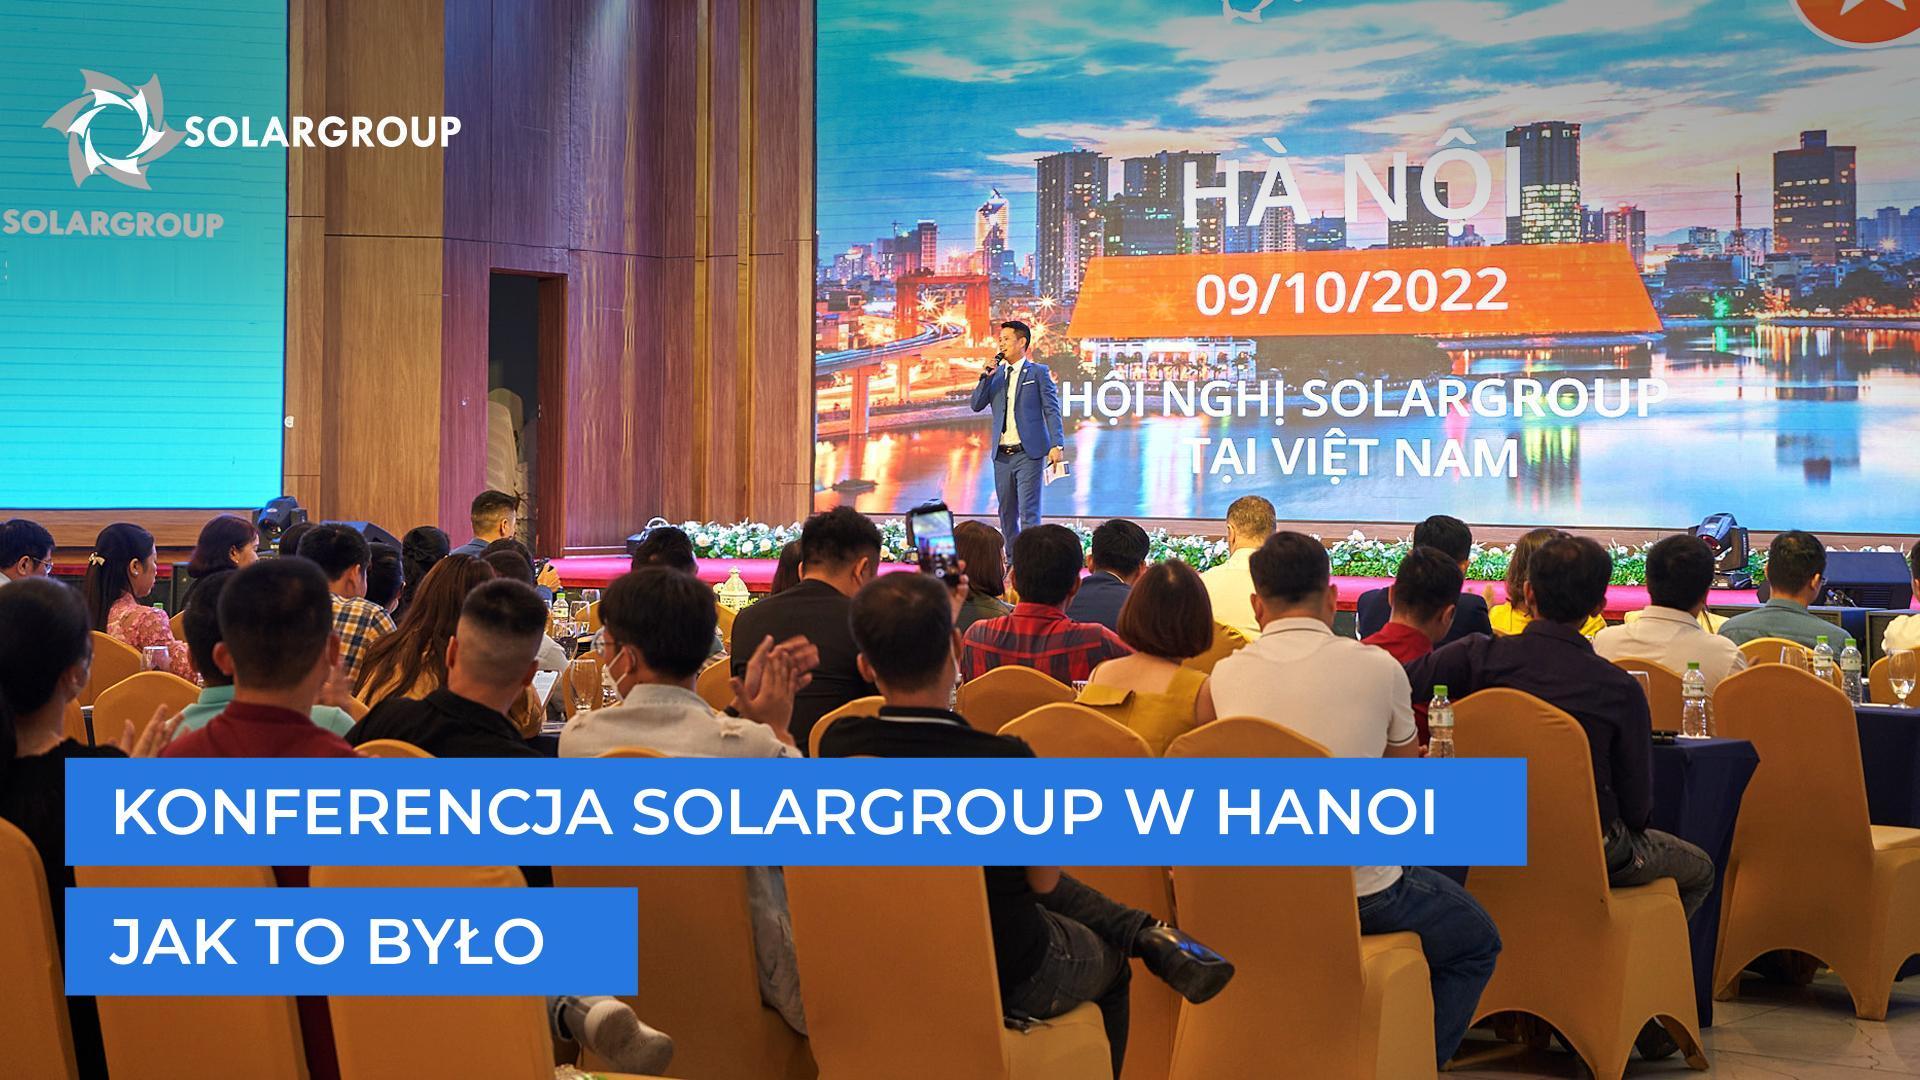 Konferencja SOLARGROUP w Hanoi: jak to było